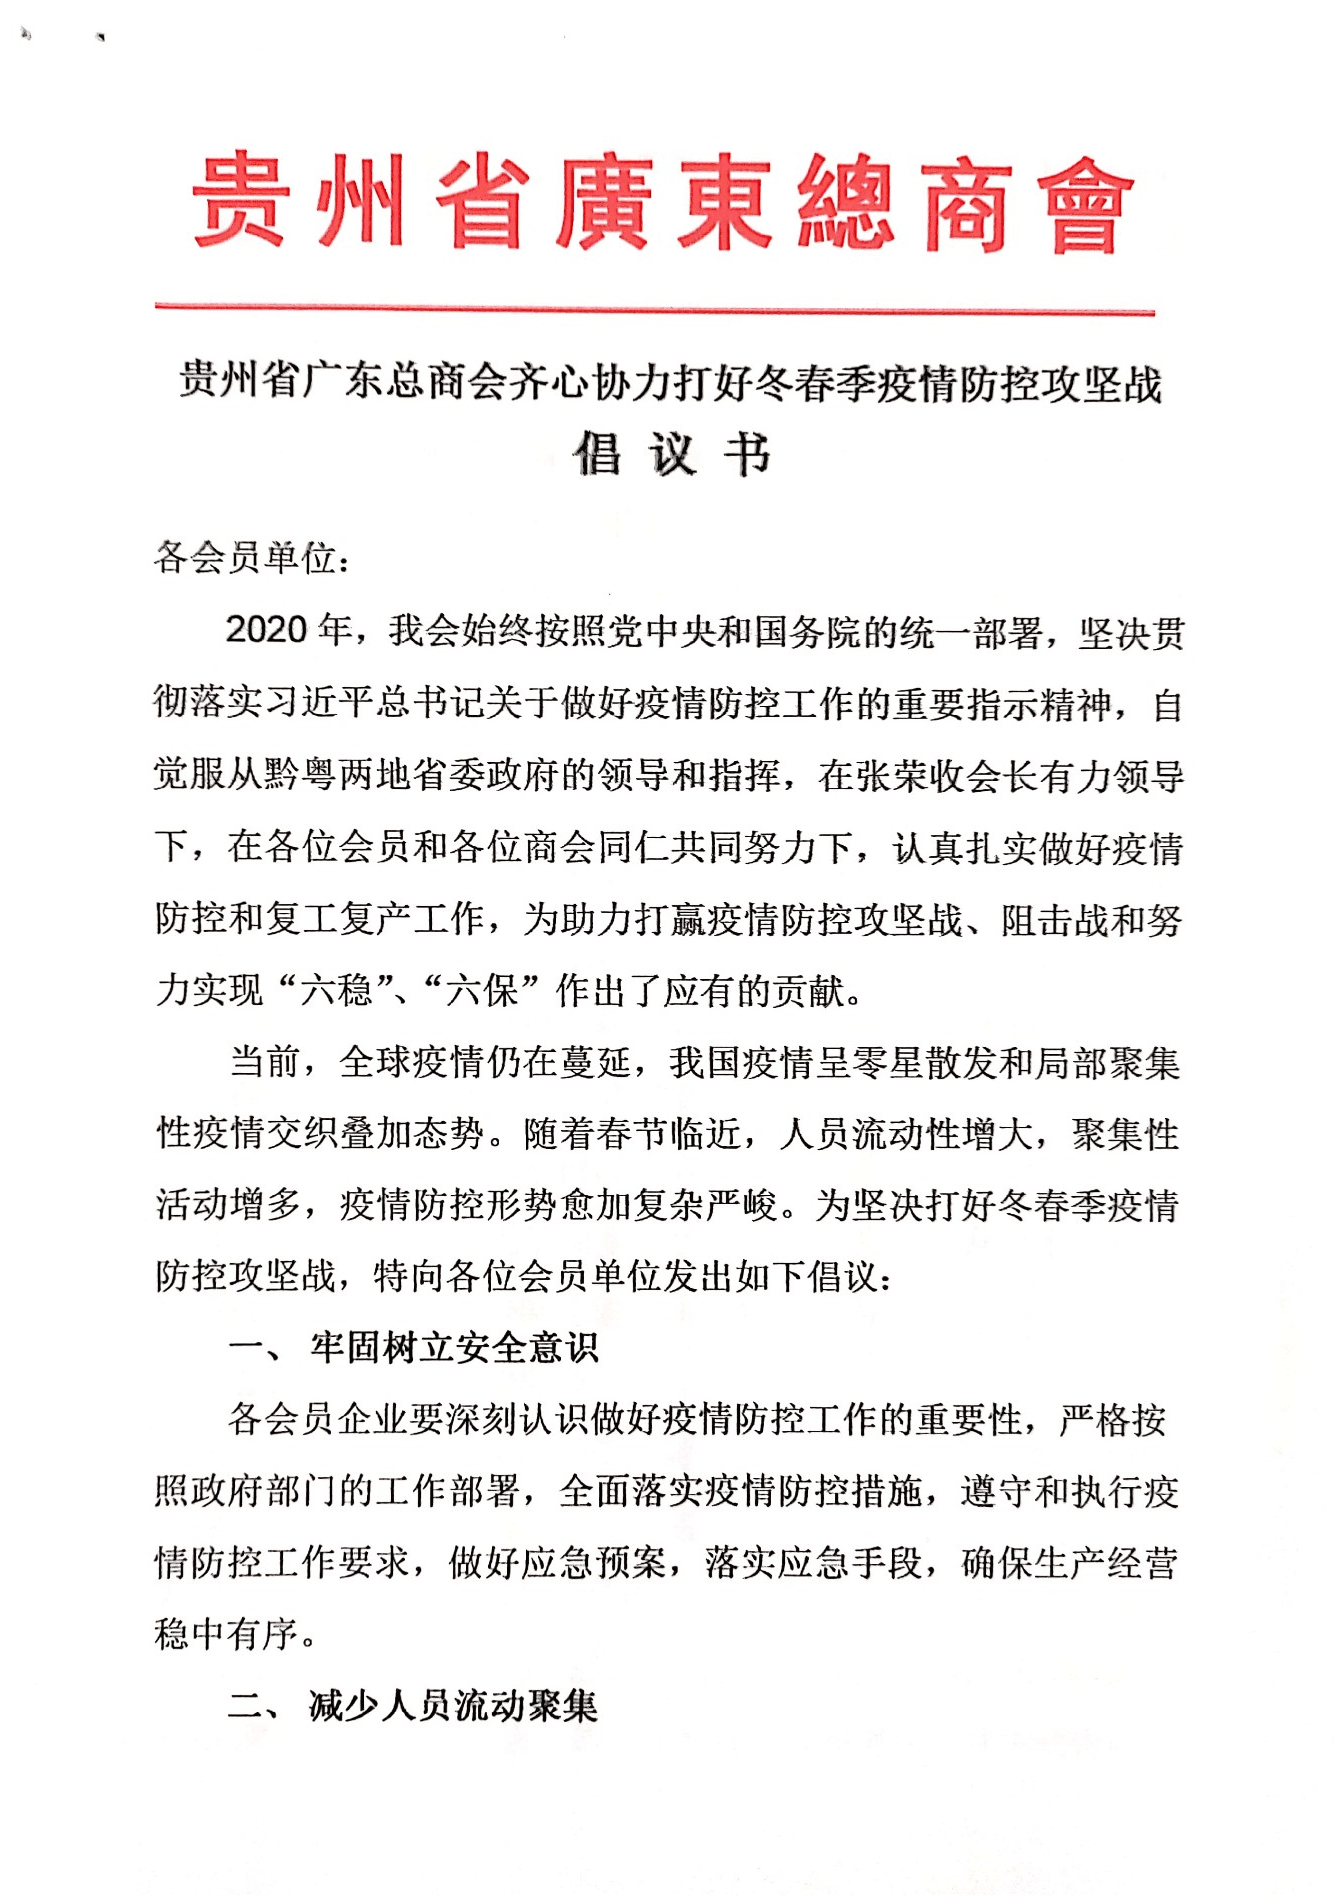 贵州省广东总商会齐心协力打好冬春季疫情防控攻坚战倡议书